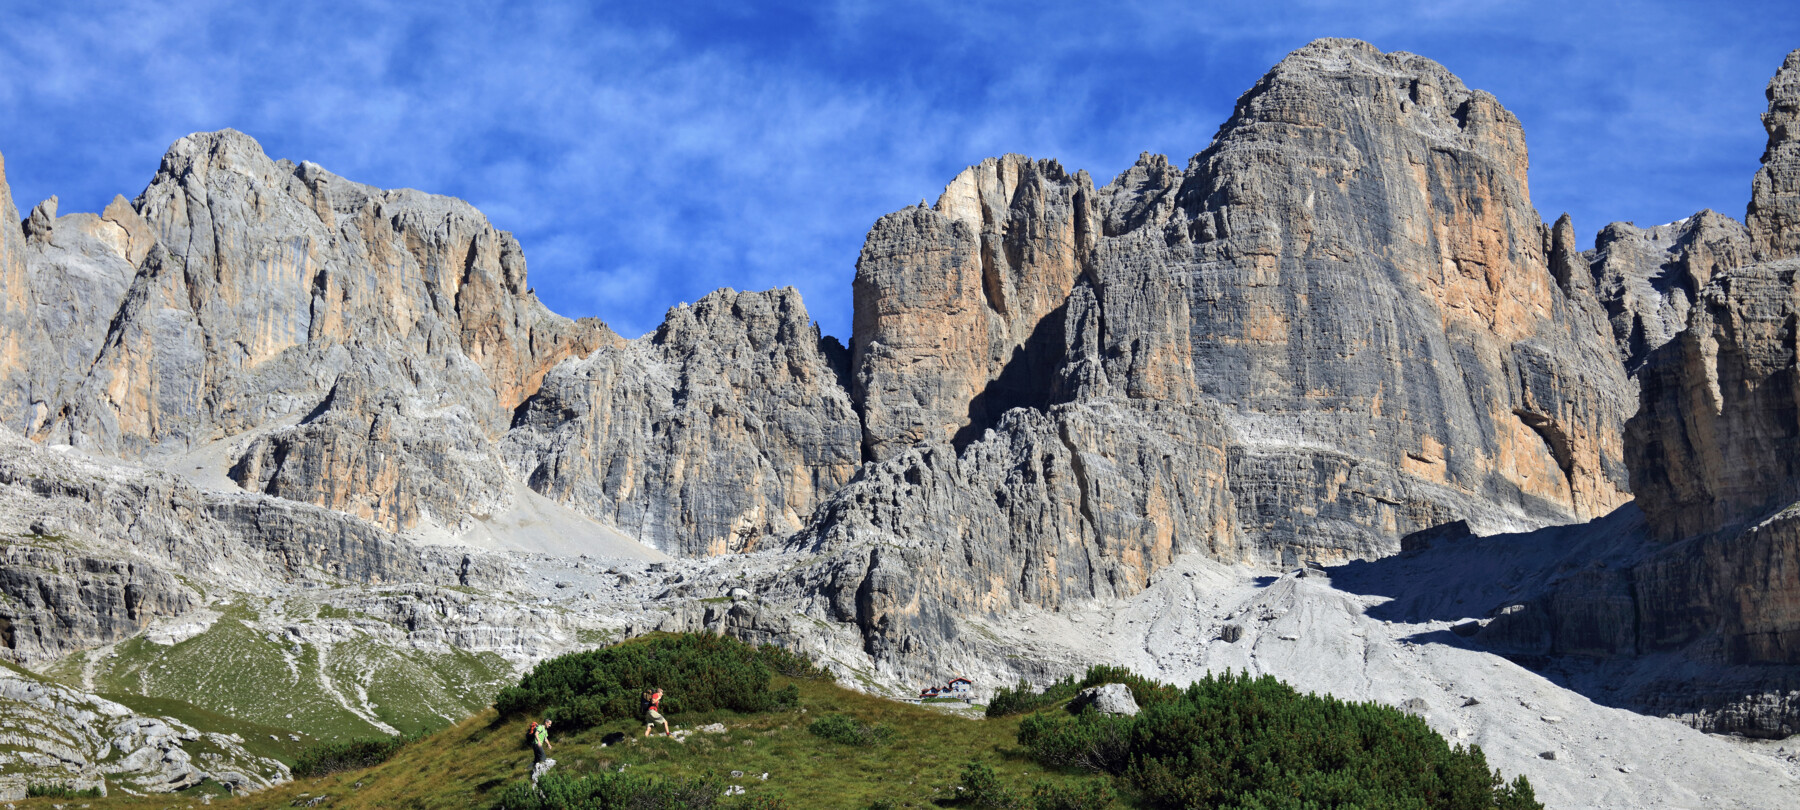 Die der Via delle Normali: Die Geologie der Dolomiten